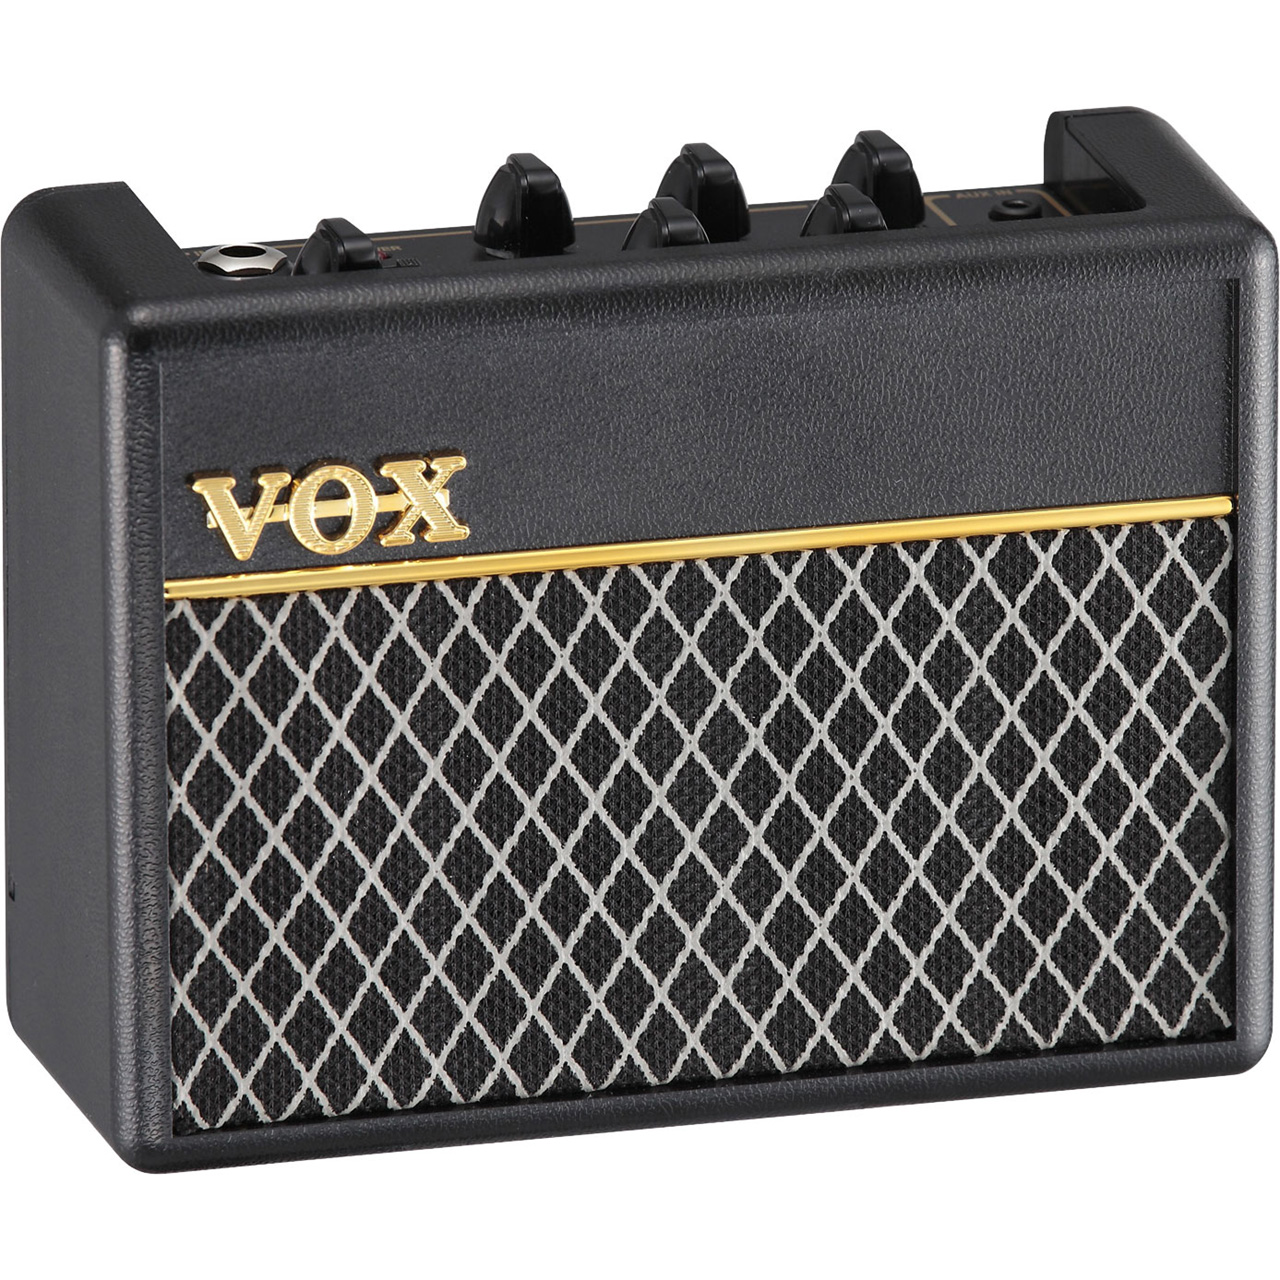 Vox-AC1-Rhythm-Vox-Bass